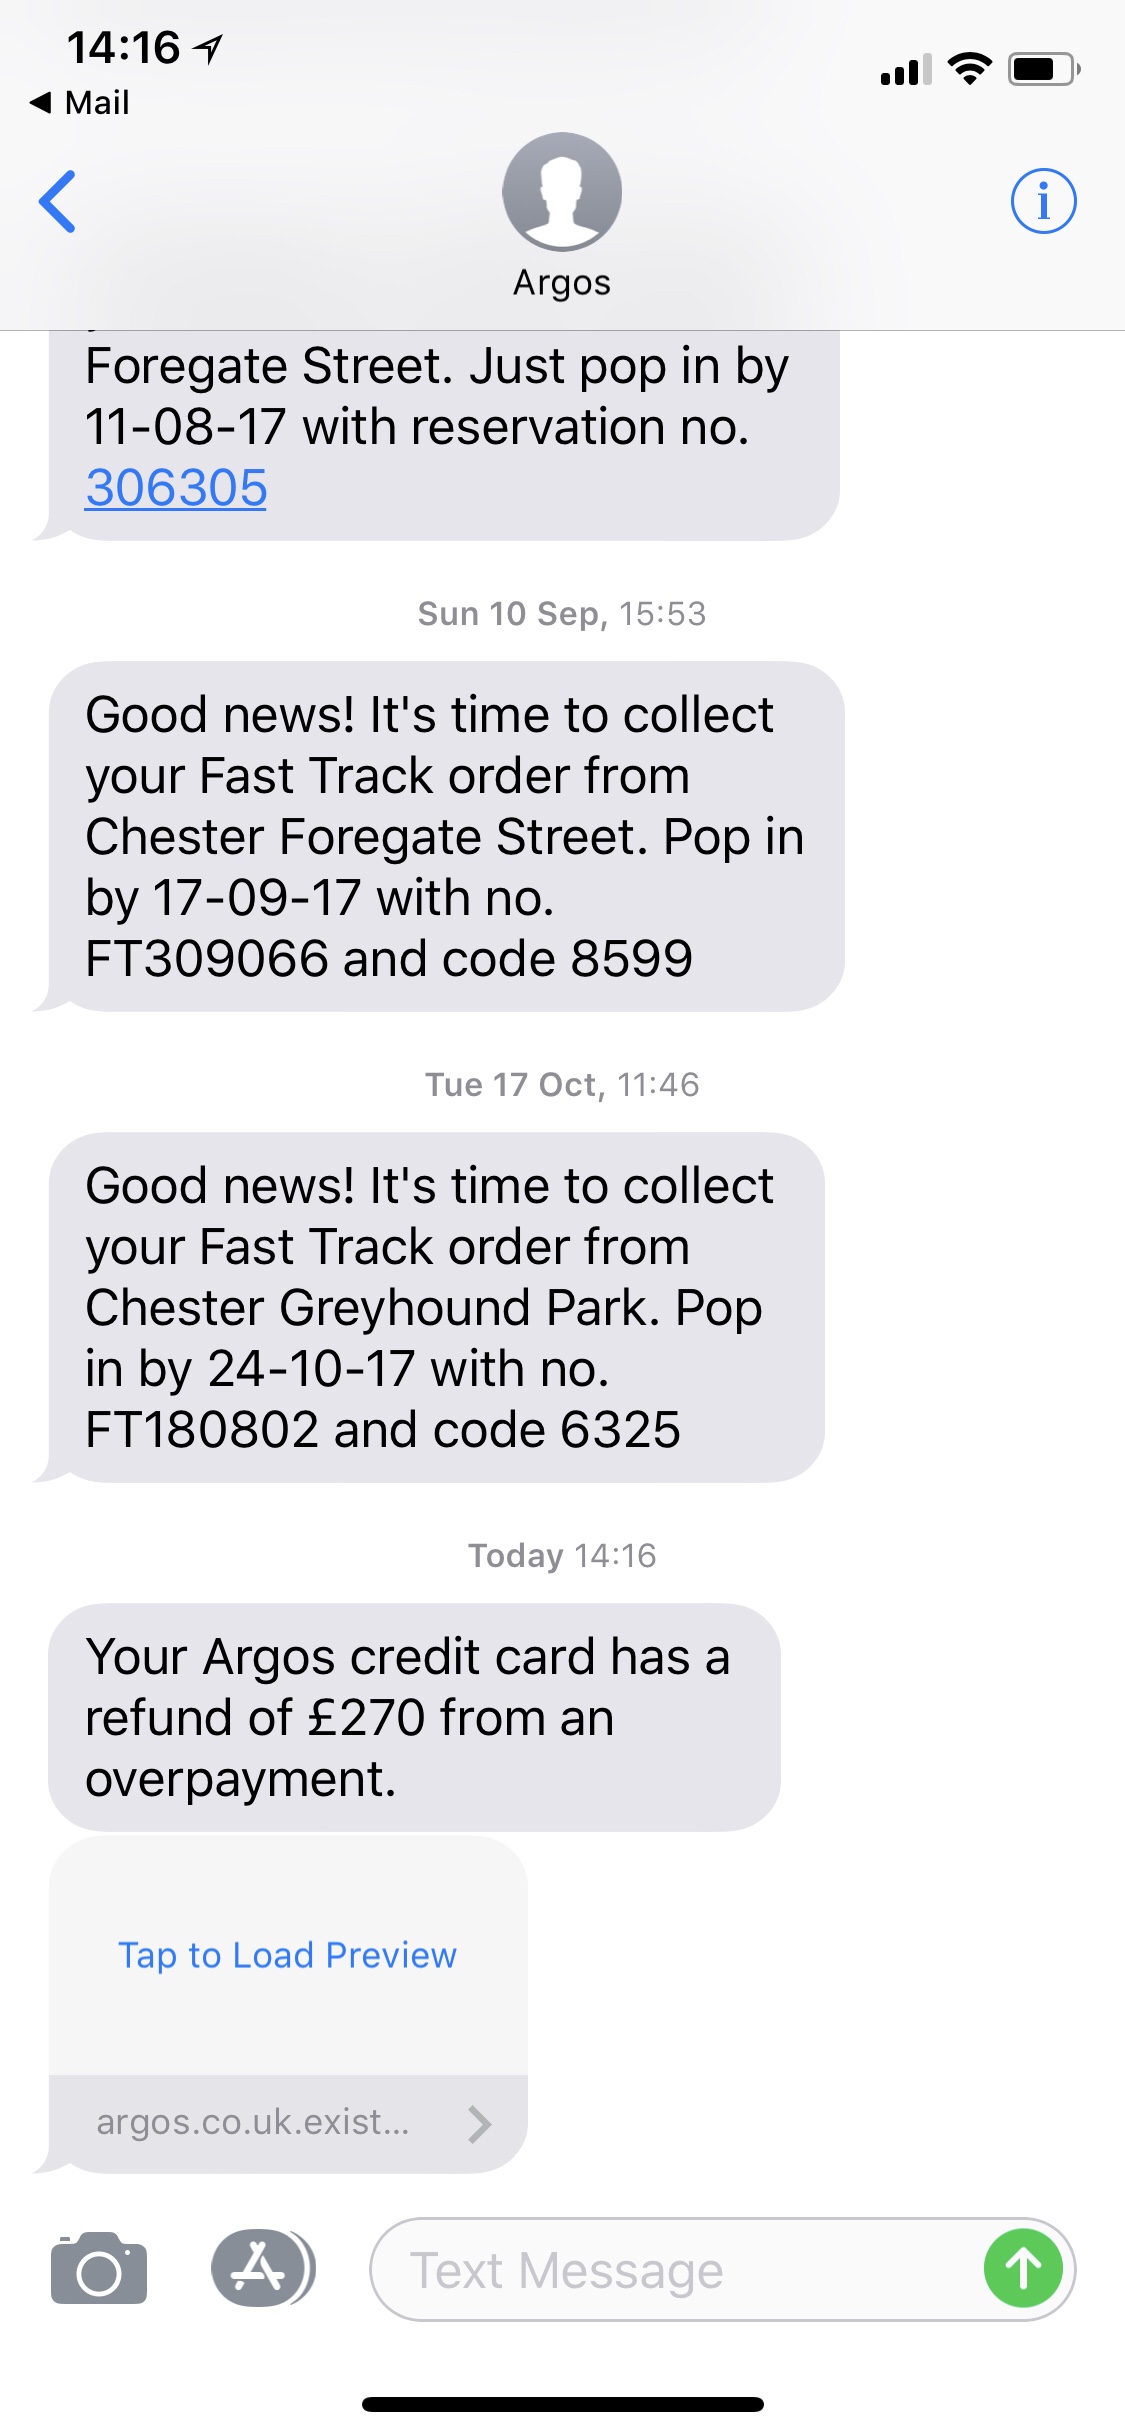 fraud-alert-argos-credit-card-refund-sms-text-message-scoopz